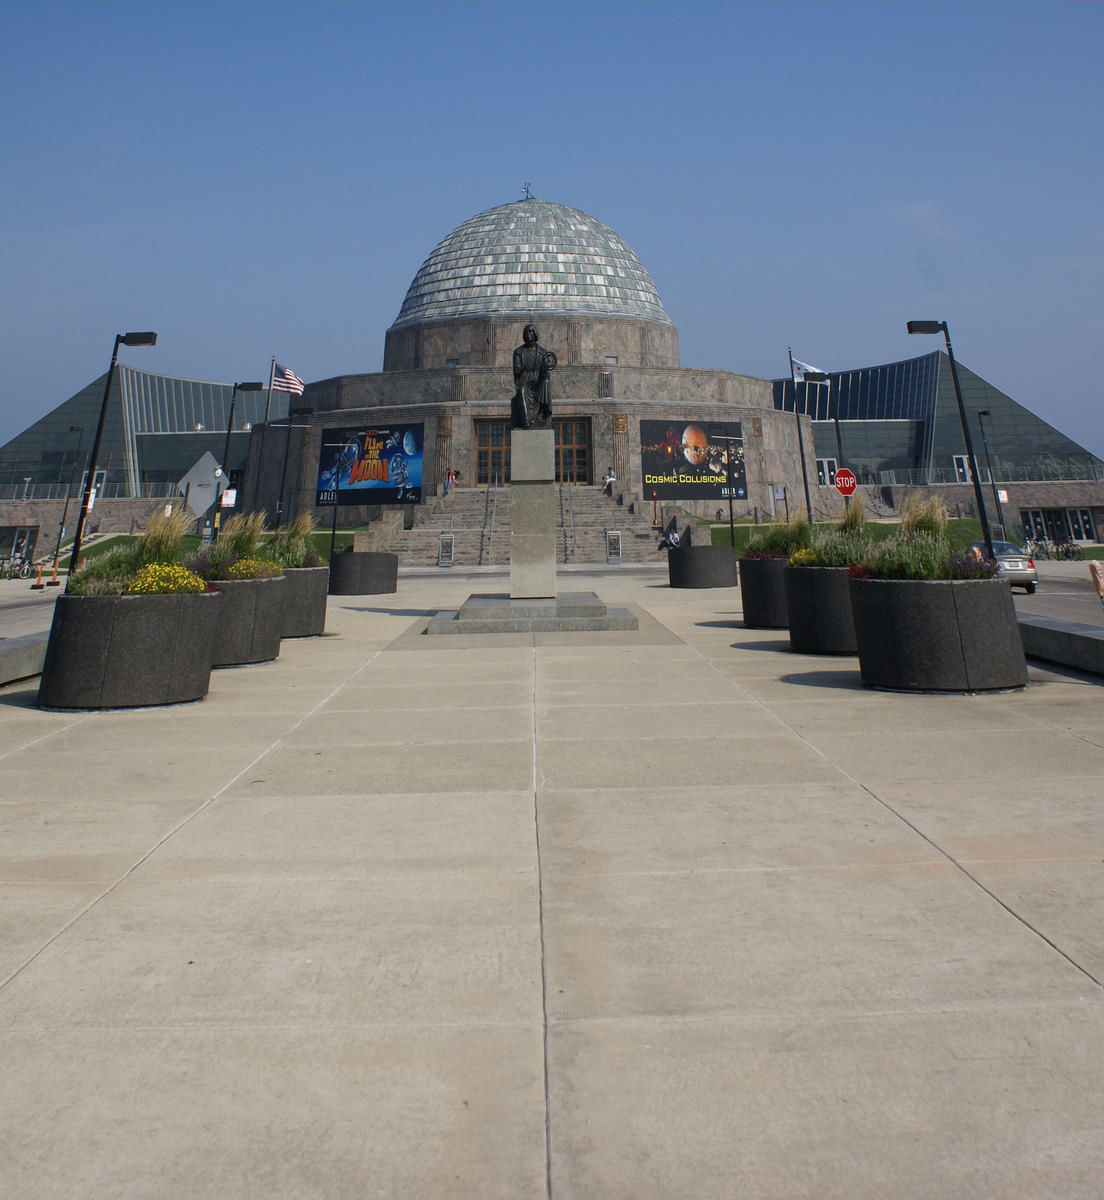 Adler Planetarium 